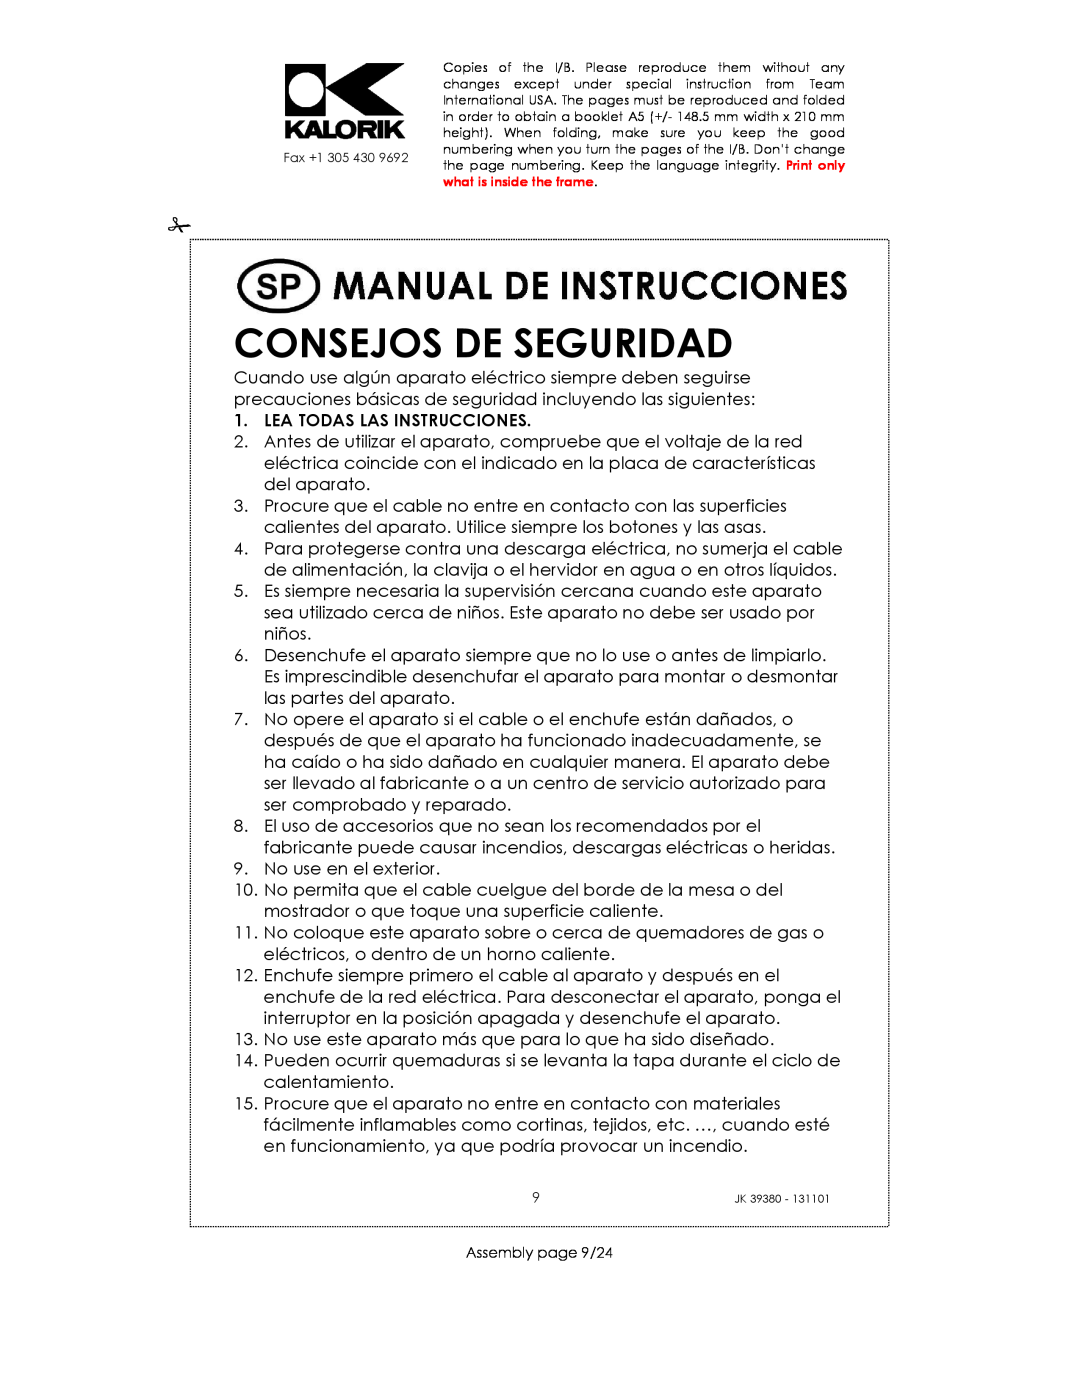 Kalorik JK 39380 manual Consejos De Seguridad, Lea Todas Las Instrucciones 